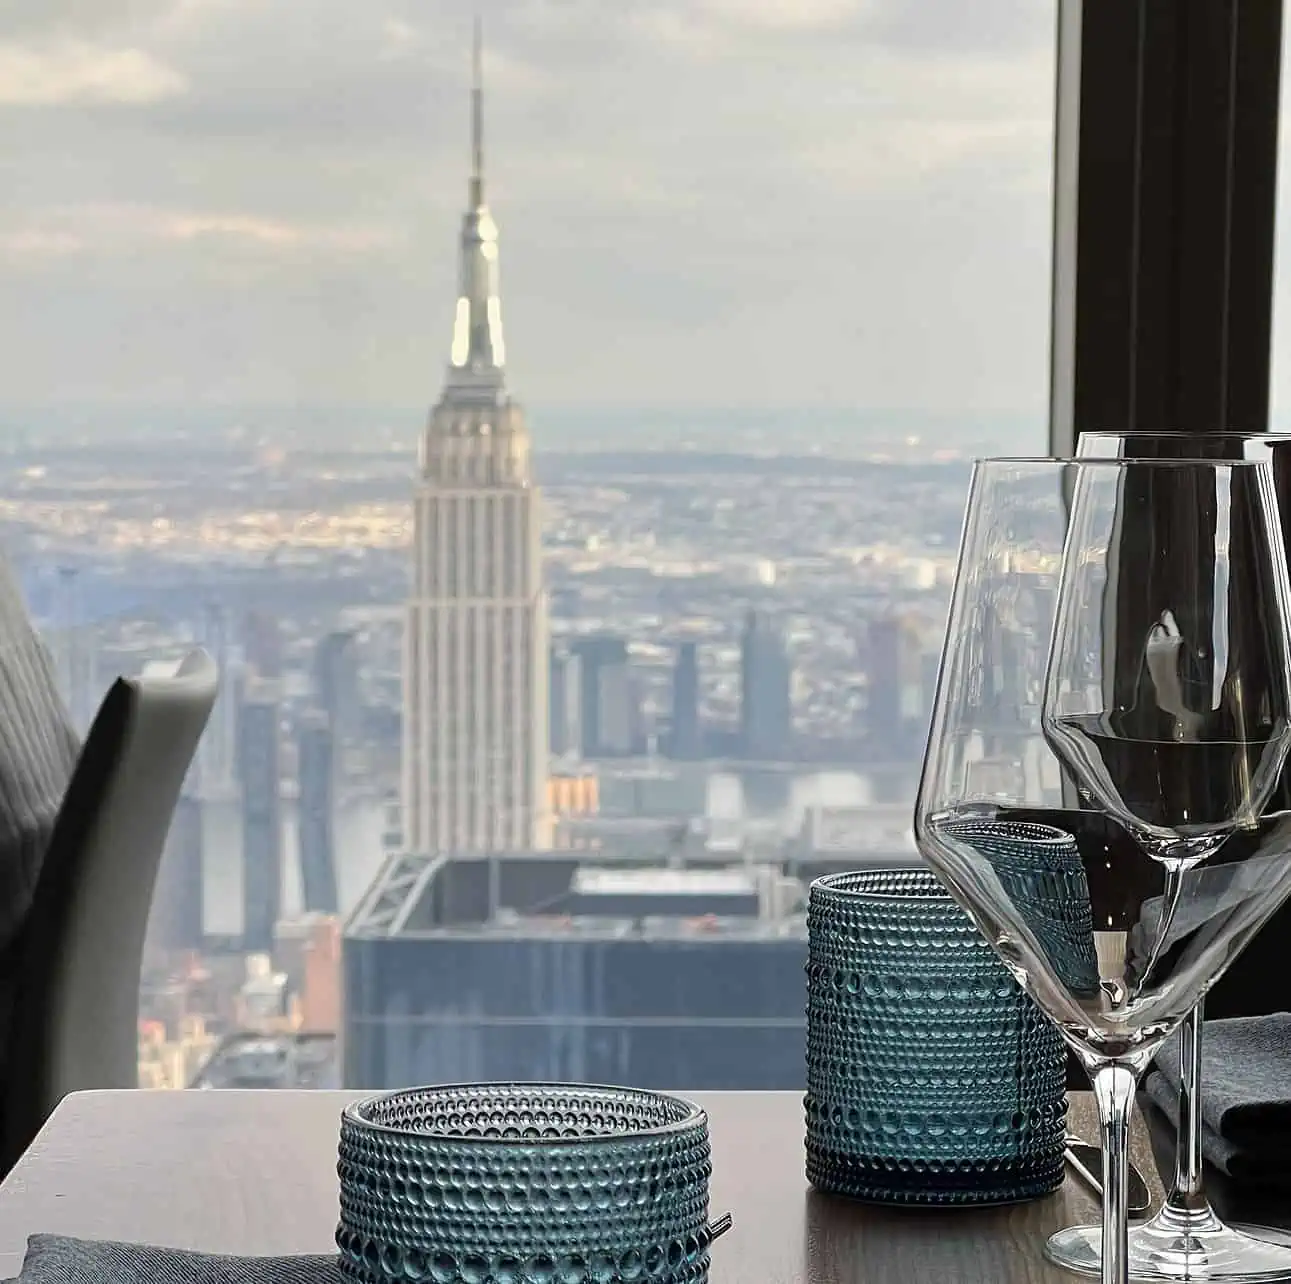 Blick vom Restaurant "The Peak" auf das Empire State Building in New York City, USA.